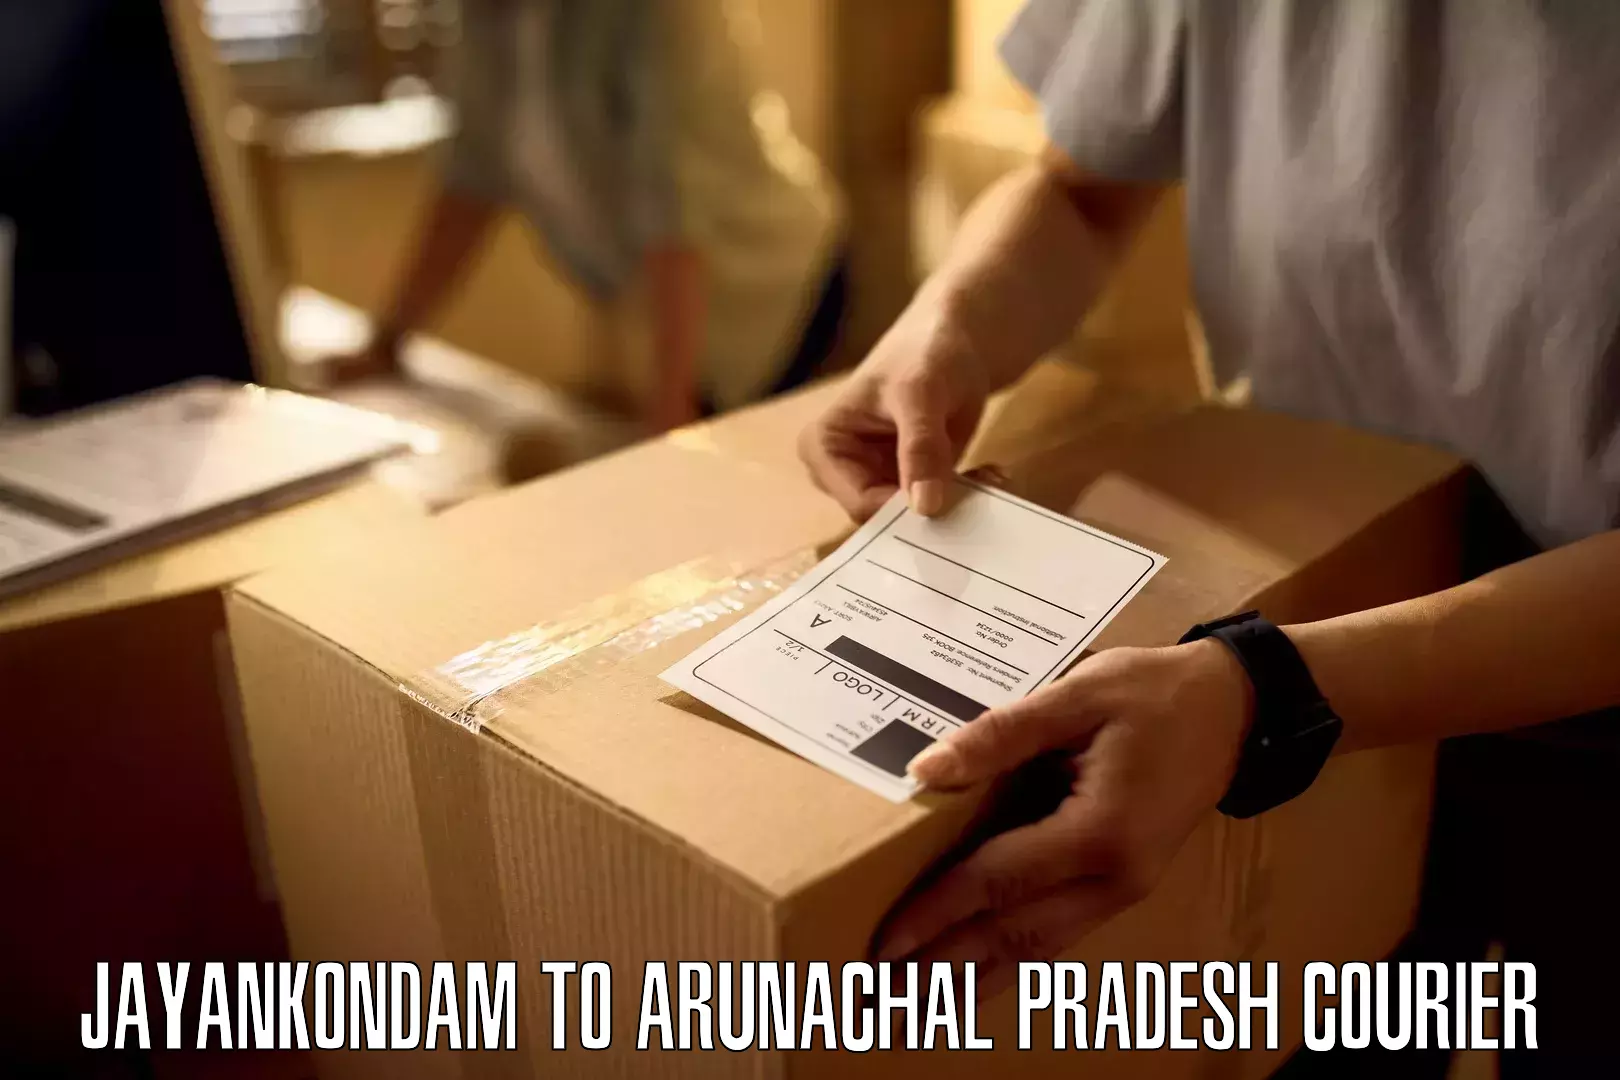 Secure shipping methods Jayankondam to Arunachal Pradesh